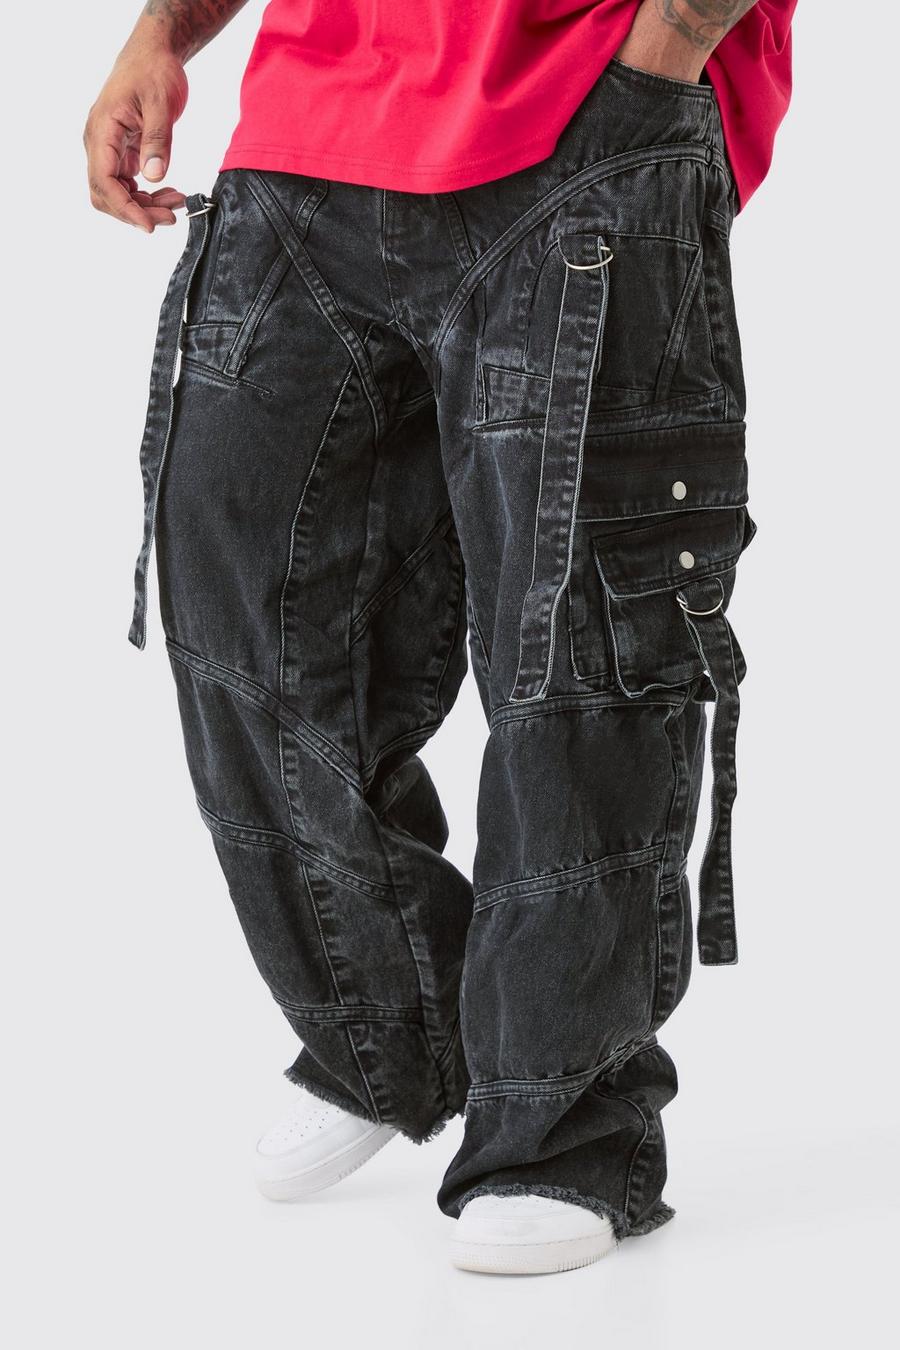 Jeans Plus Size extra comodi con fascette rigide e fibbia, Washed black